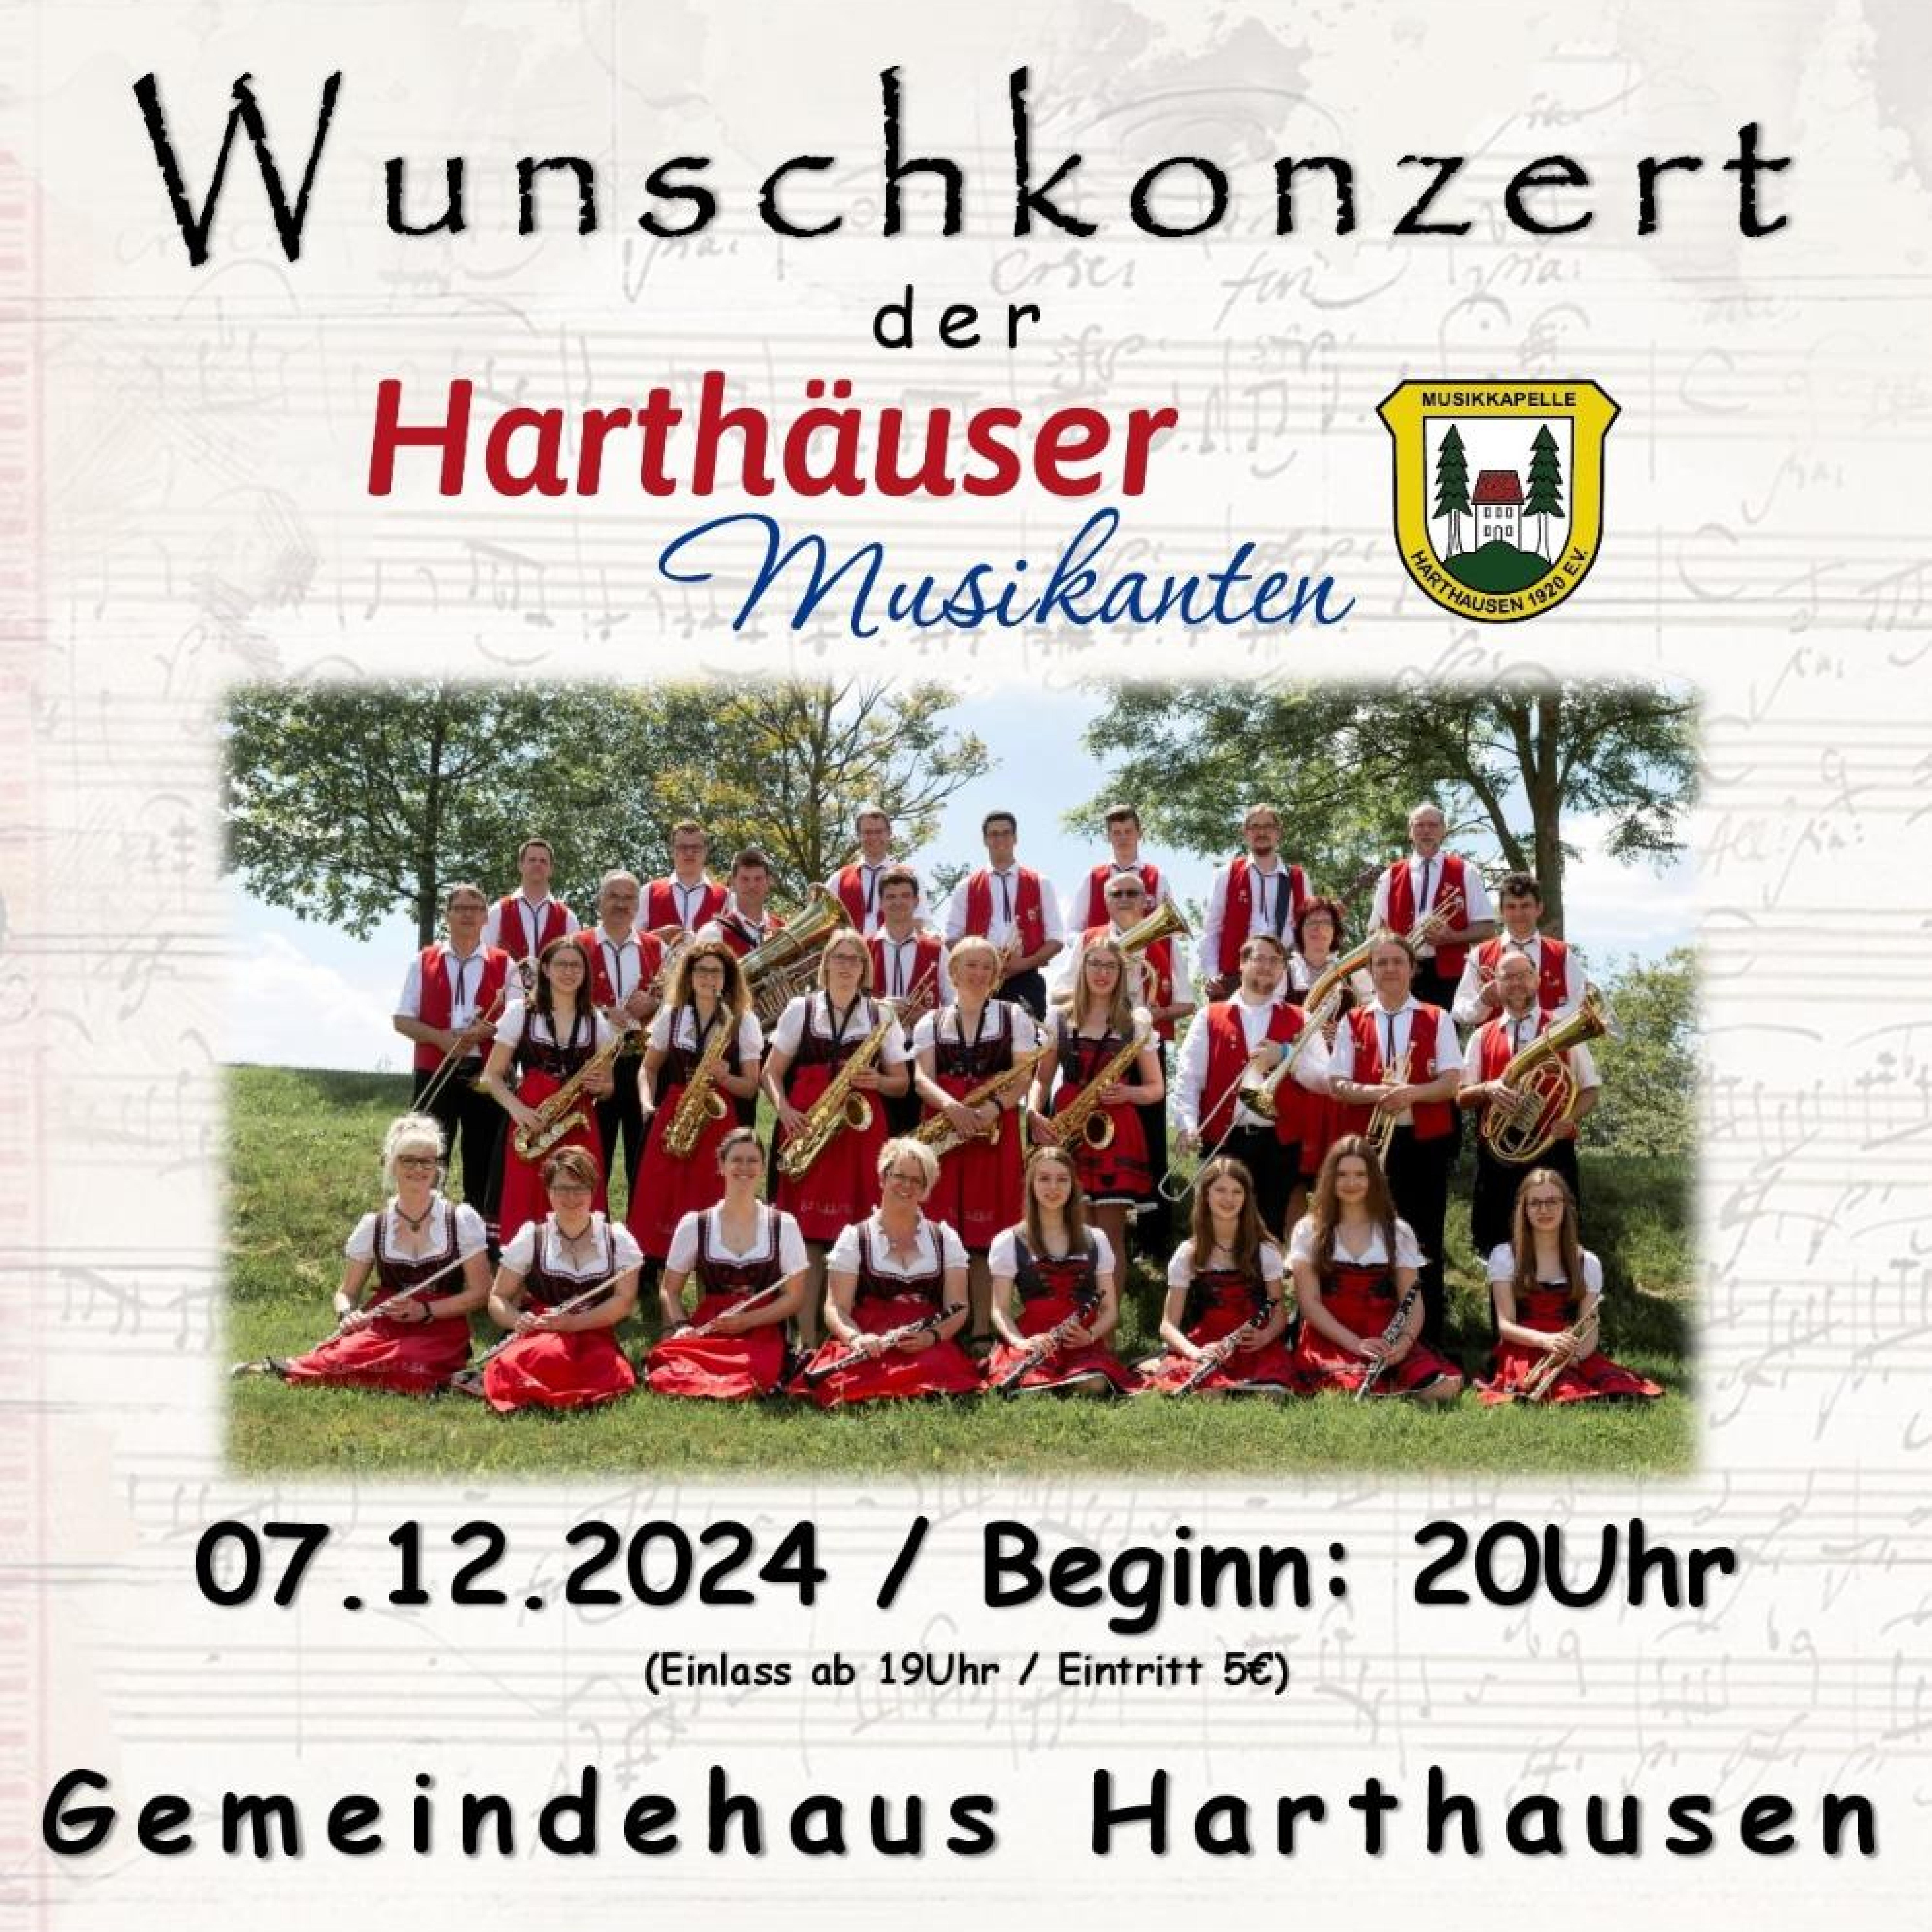 Wunschkonzert_MK-Harthausen_Flyer